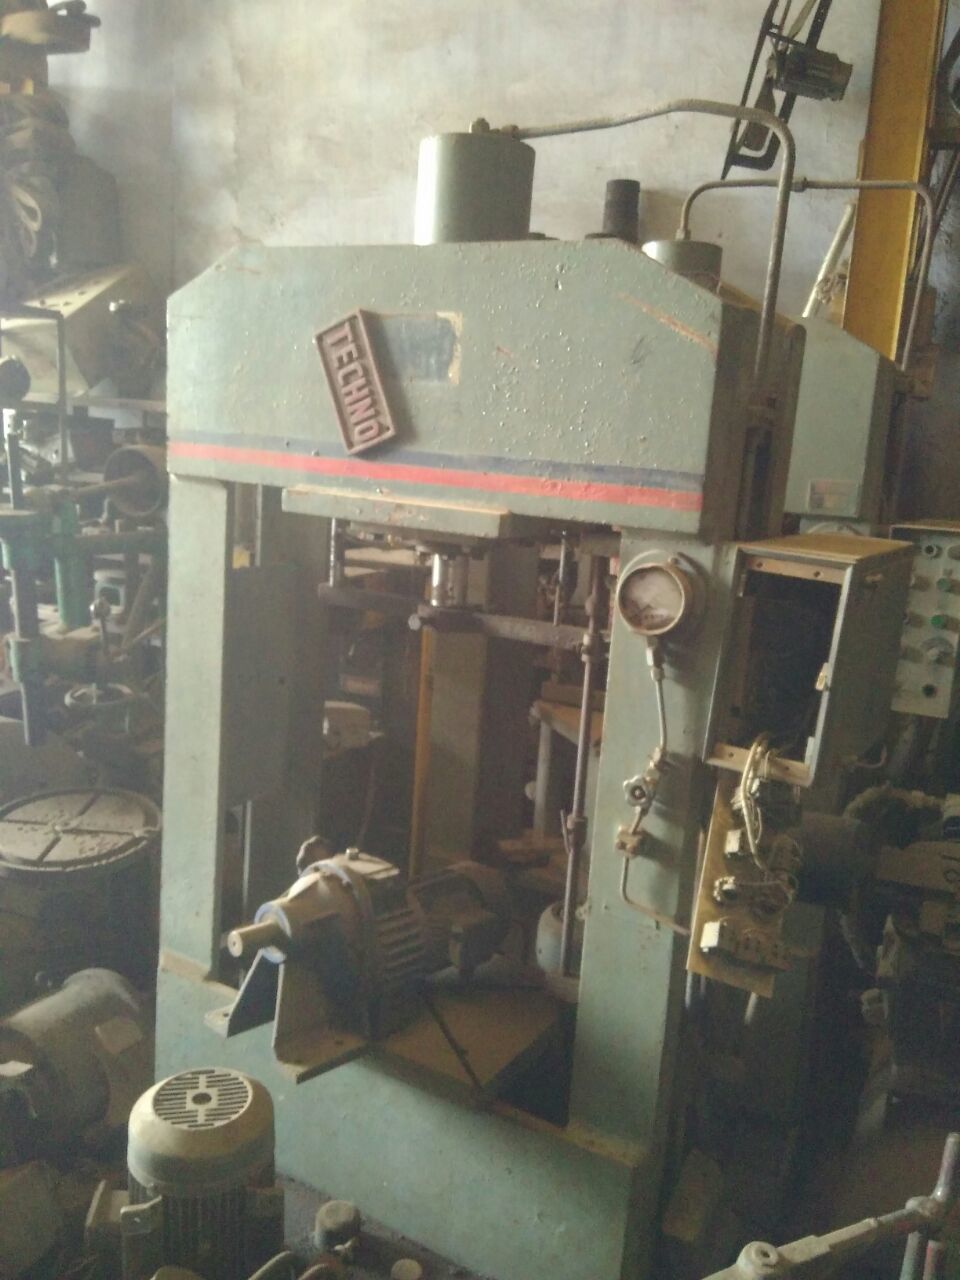 Hydraulic press